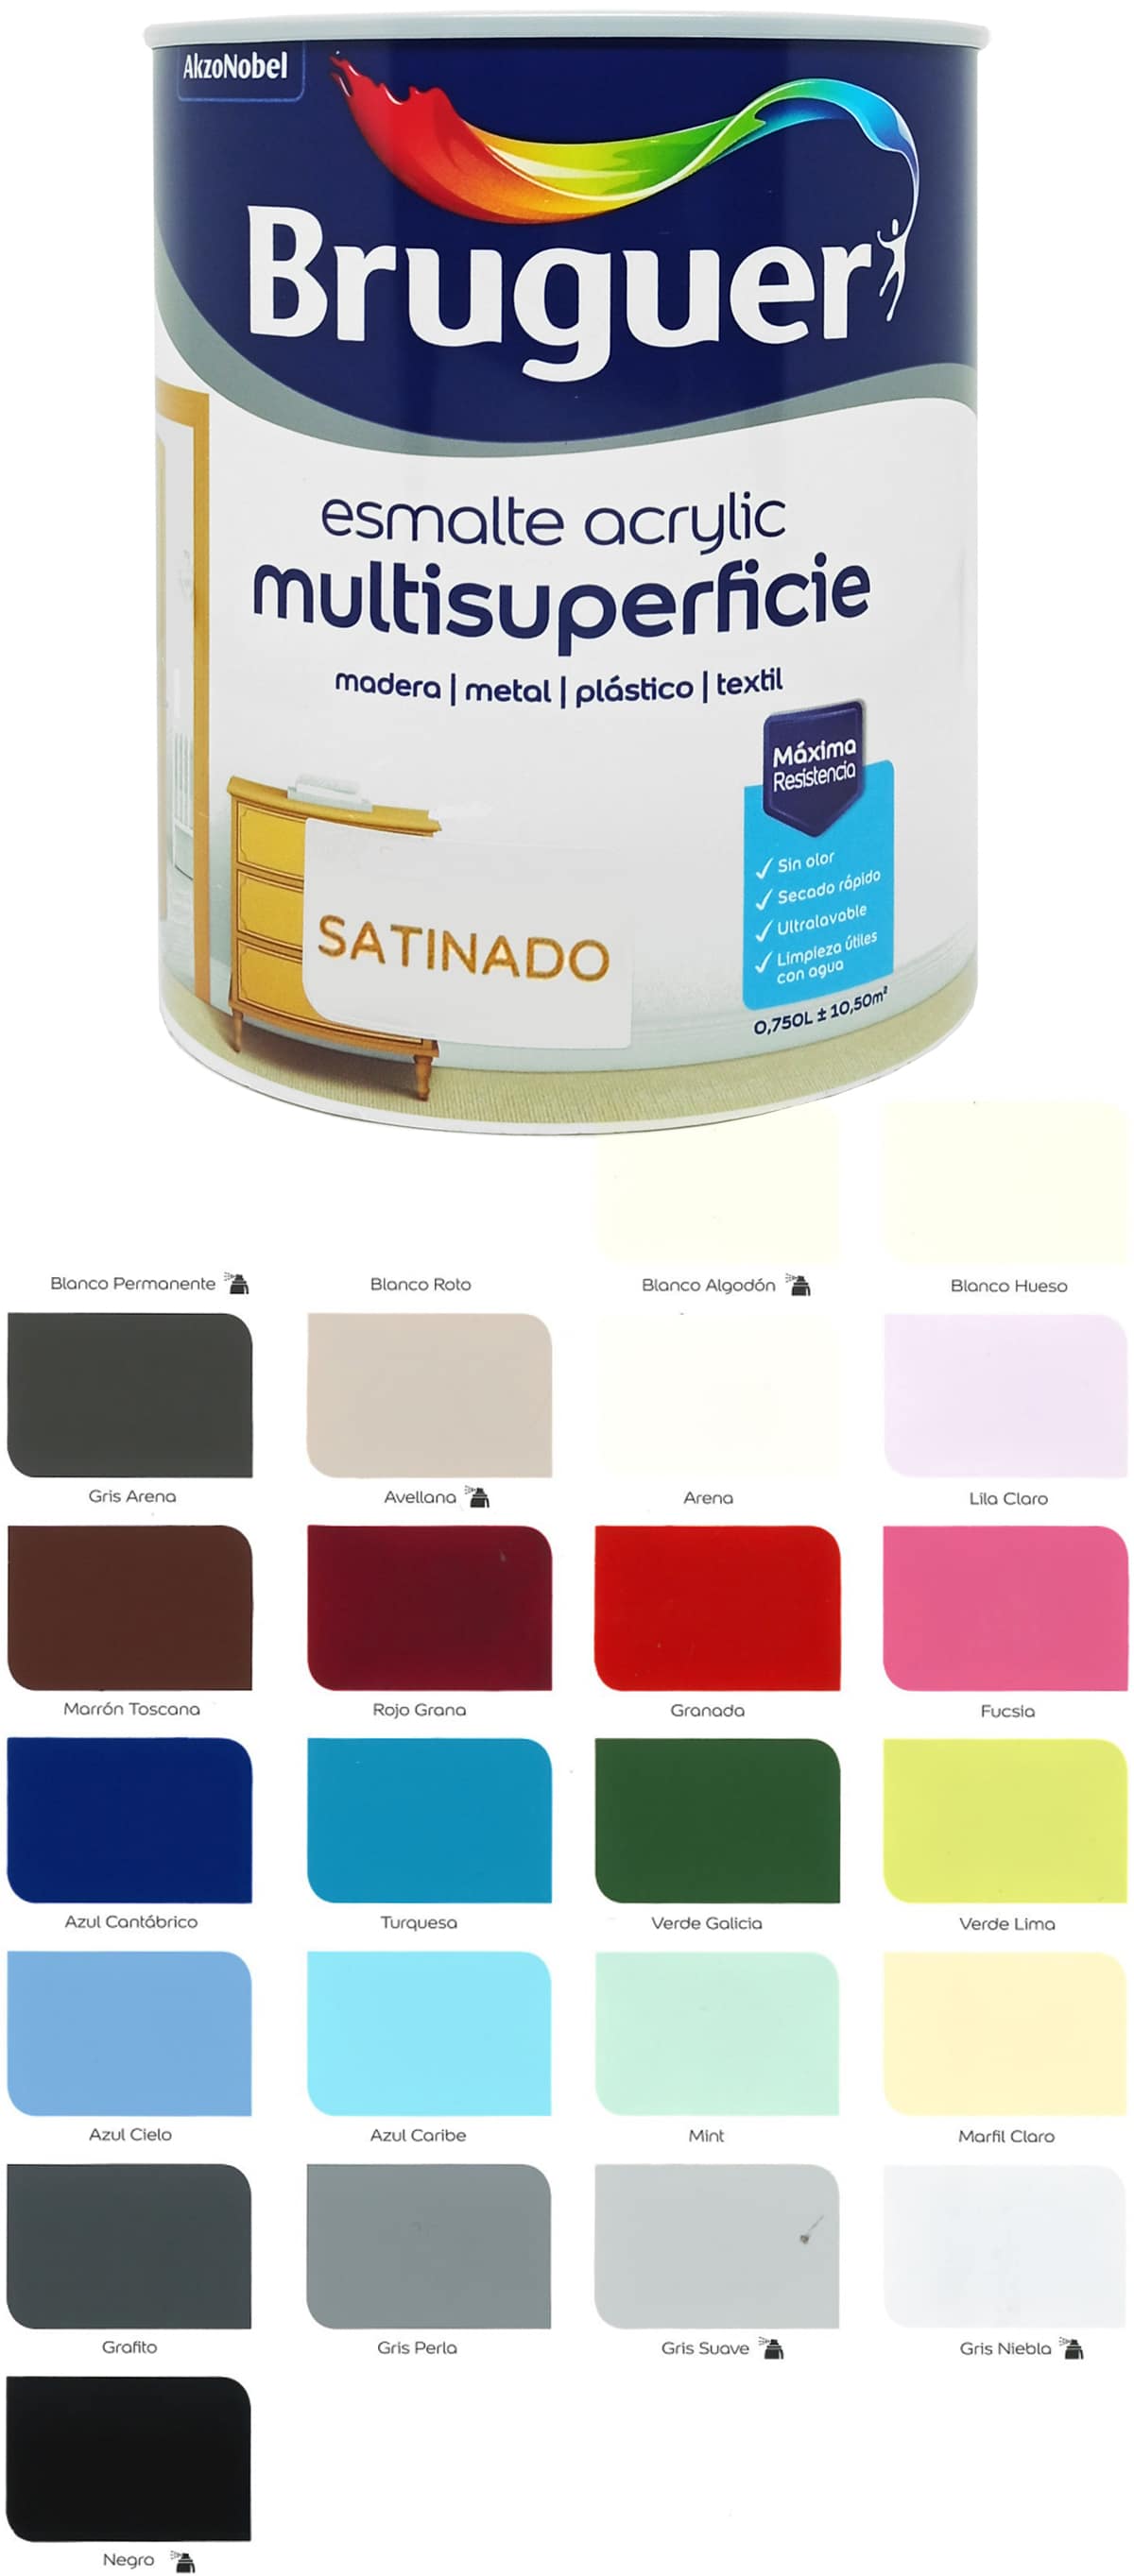 claro Molestia Gallina Bruguer Acrylic Satinado, carta de Colores, esmalte al agua.